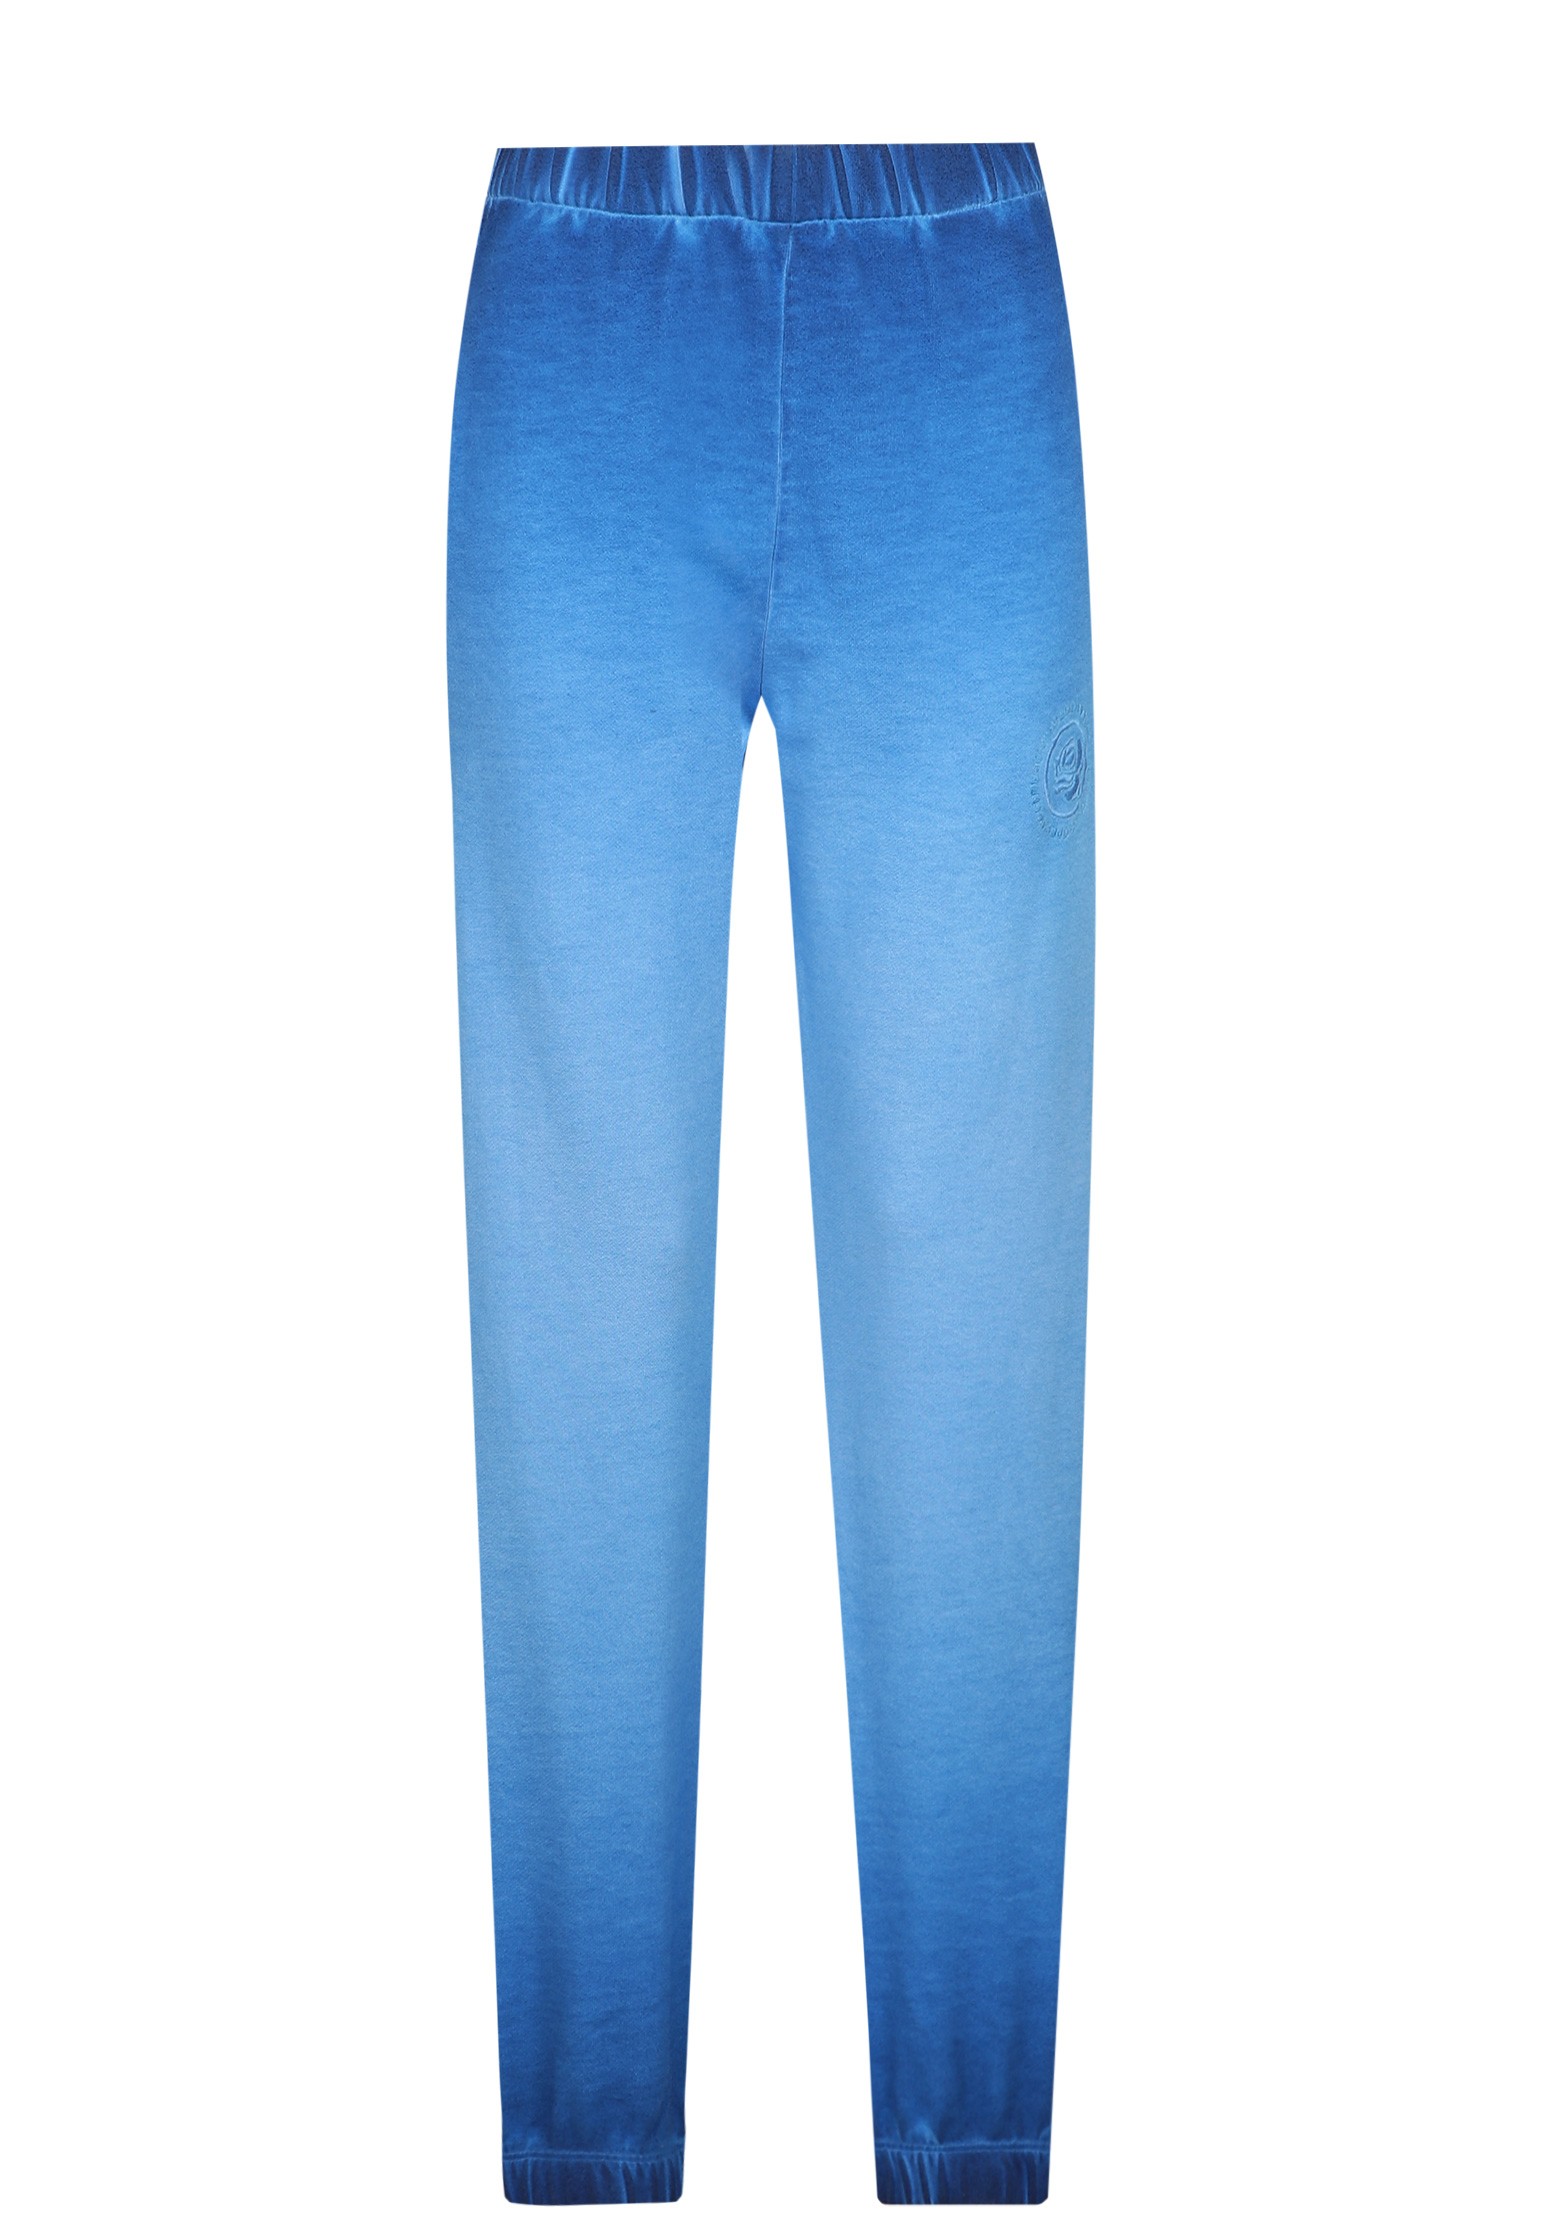 Спортивные брюки женские OPENING CEREMONY 128657 синие S